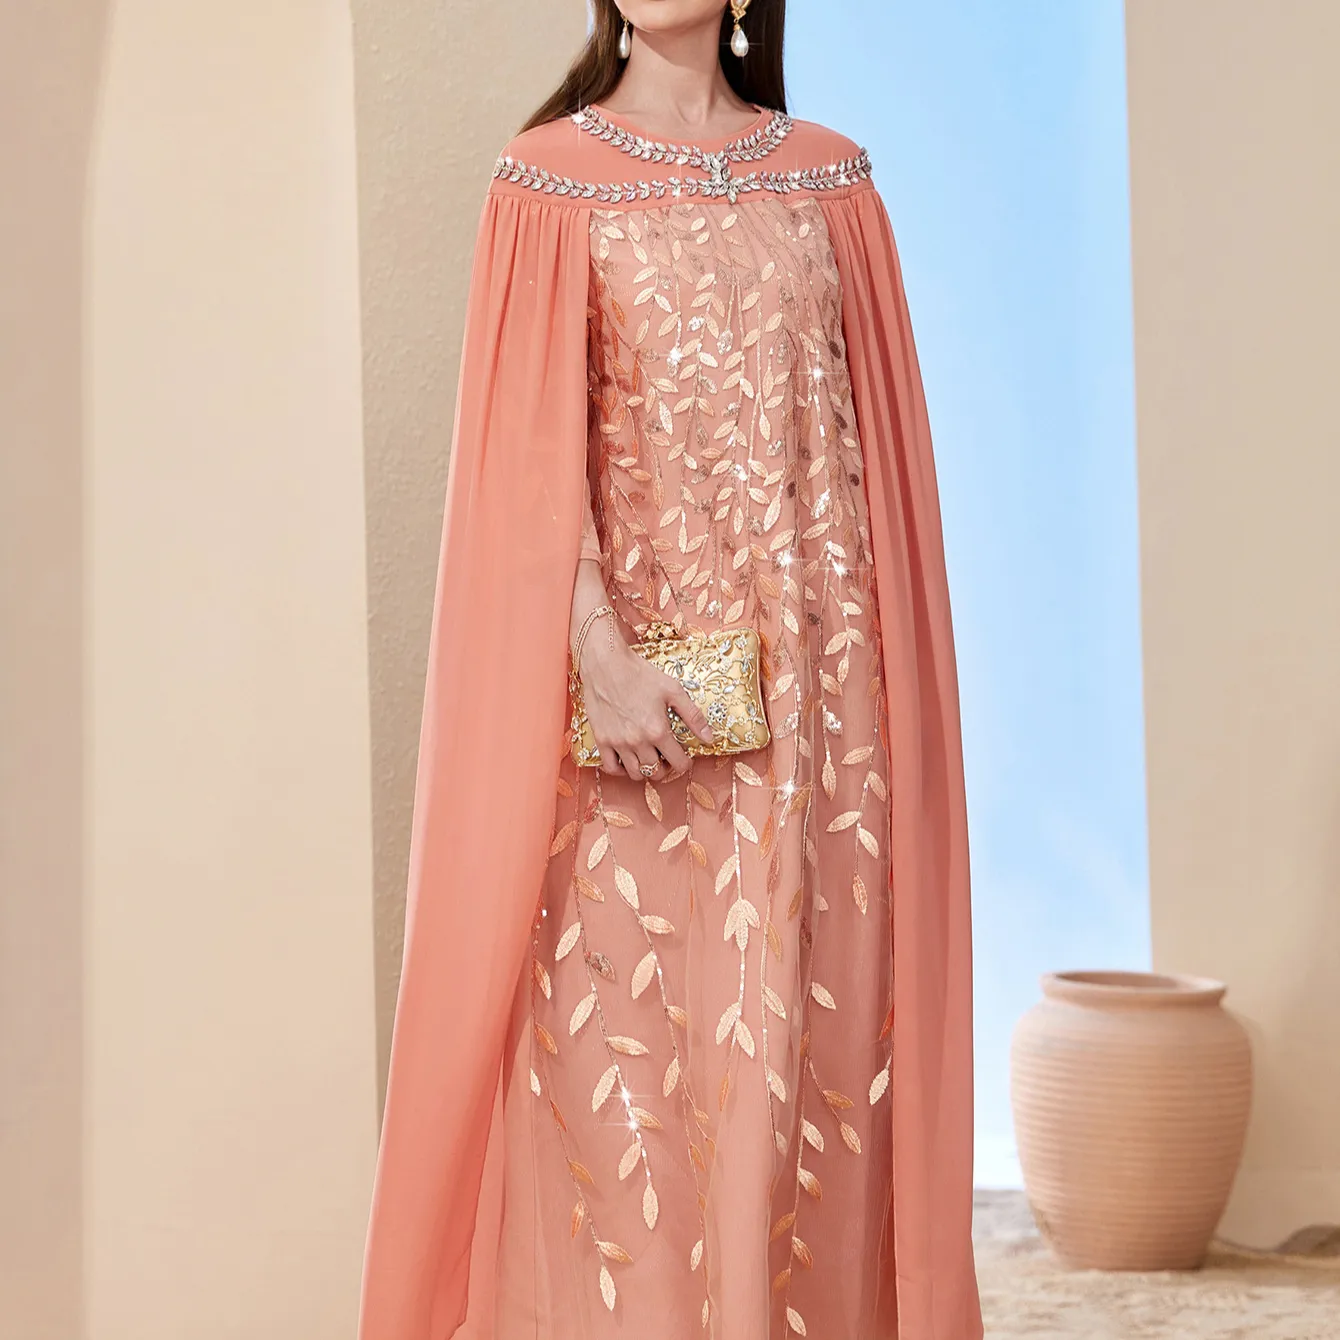 शरद ऋतु की महिलाएं सेक्सी स्लिम रैप लीफ मेश कढ़ाई वाली फैशन क्लोक ड्रेस दुबई ड्रेस पहनती हैं